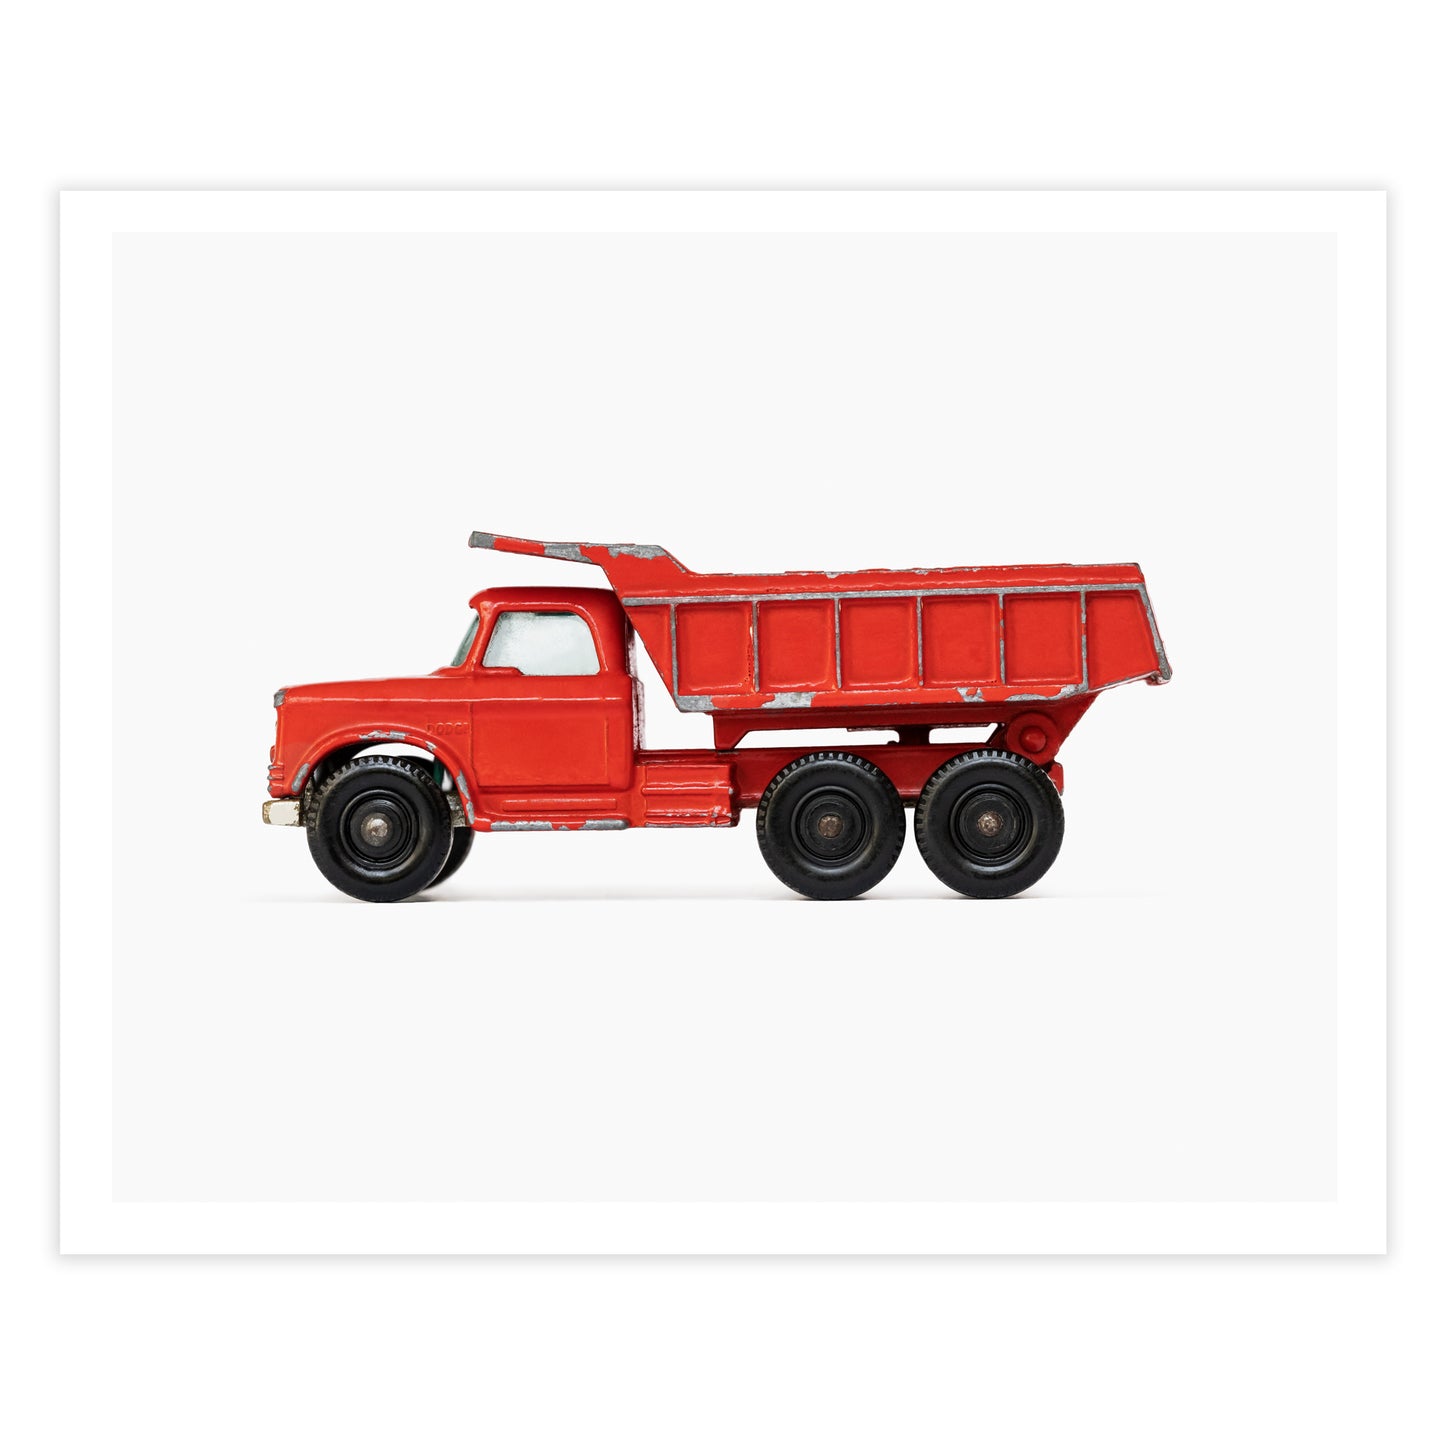 Red Dump Truck art print